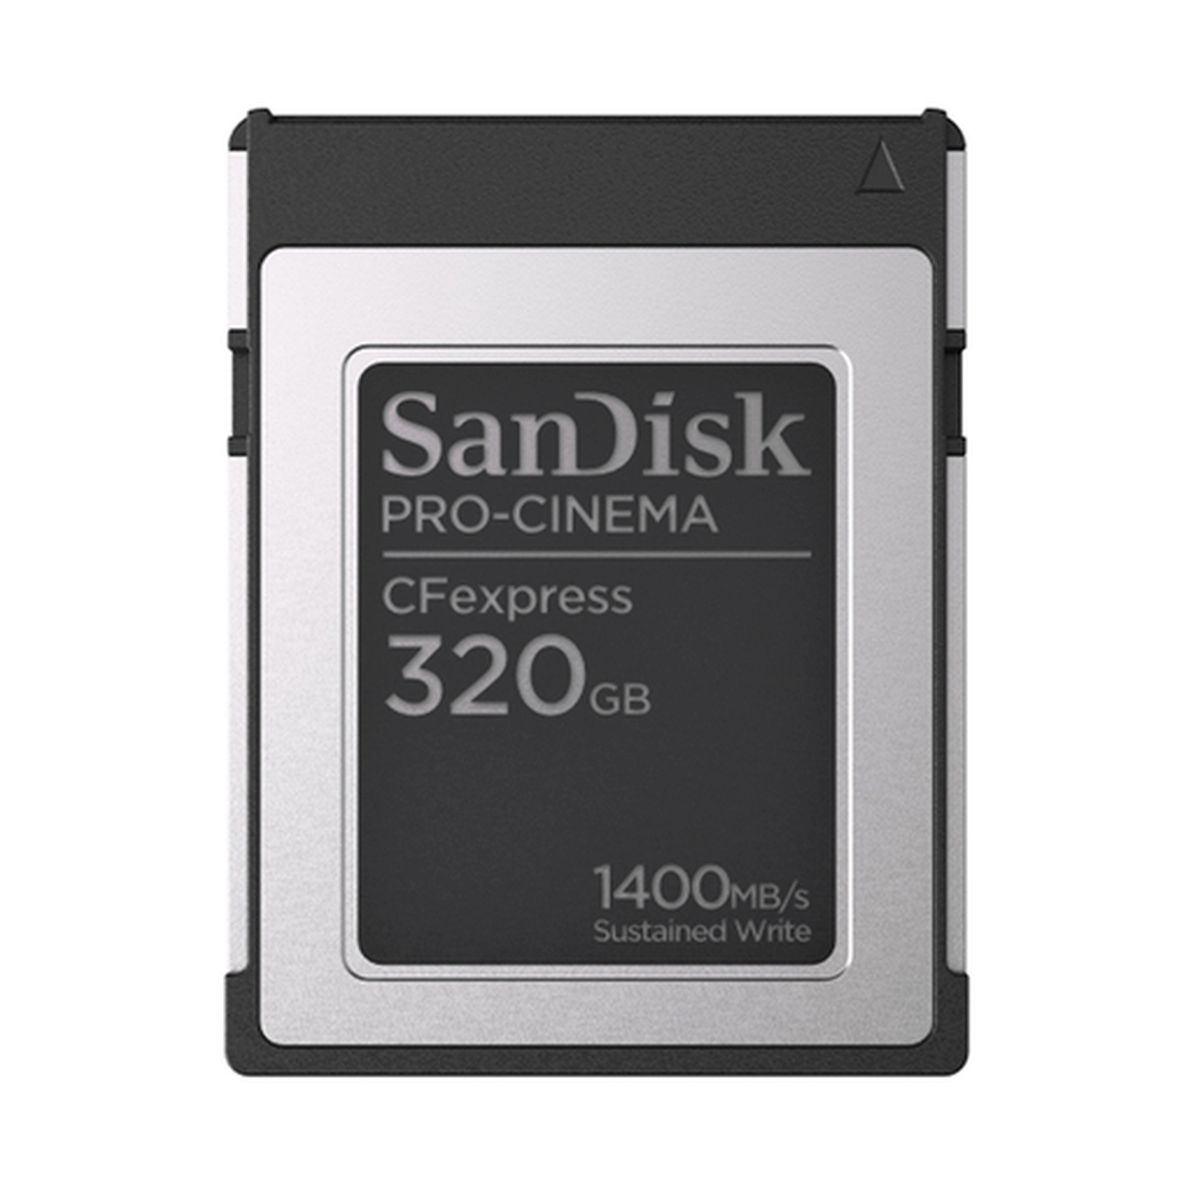 SanDisk 320 GB CFexpress Pro Cinema Typ B